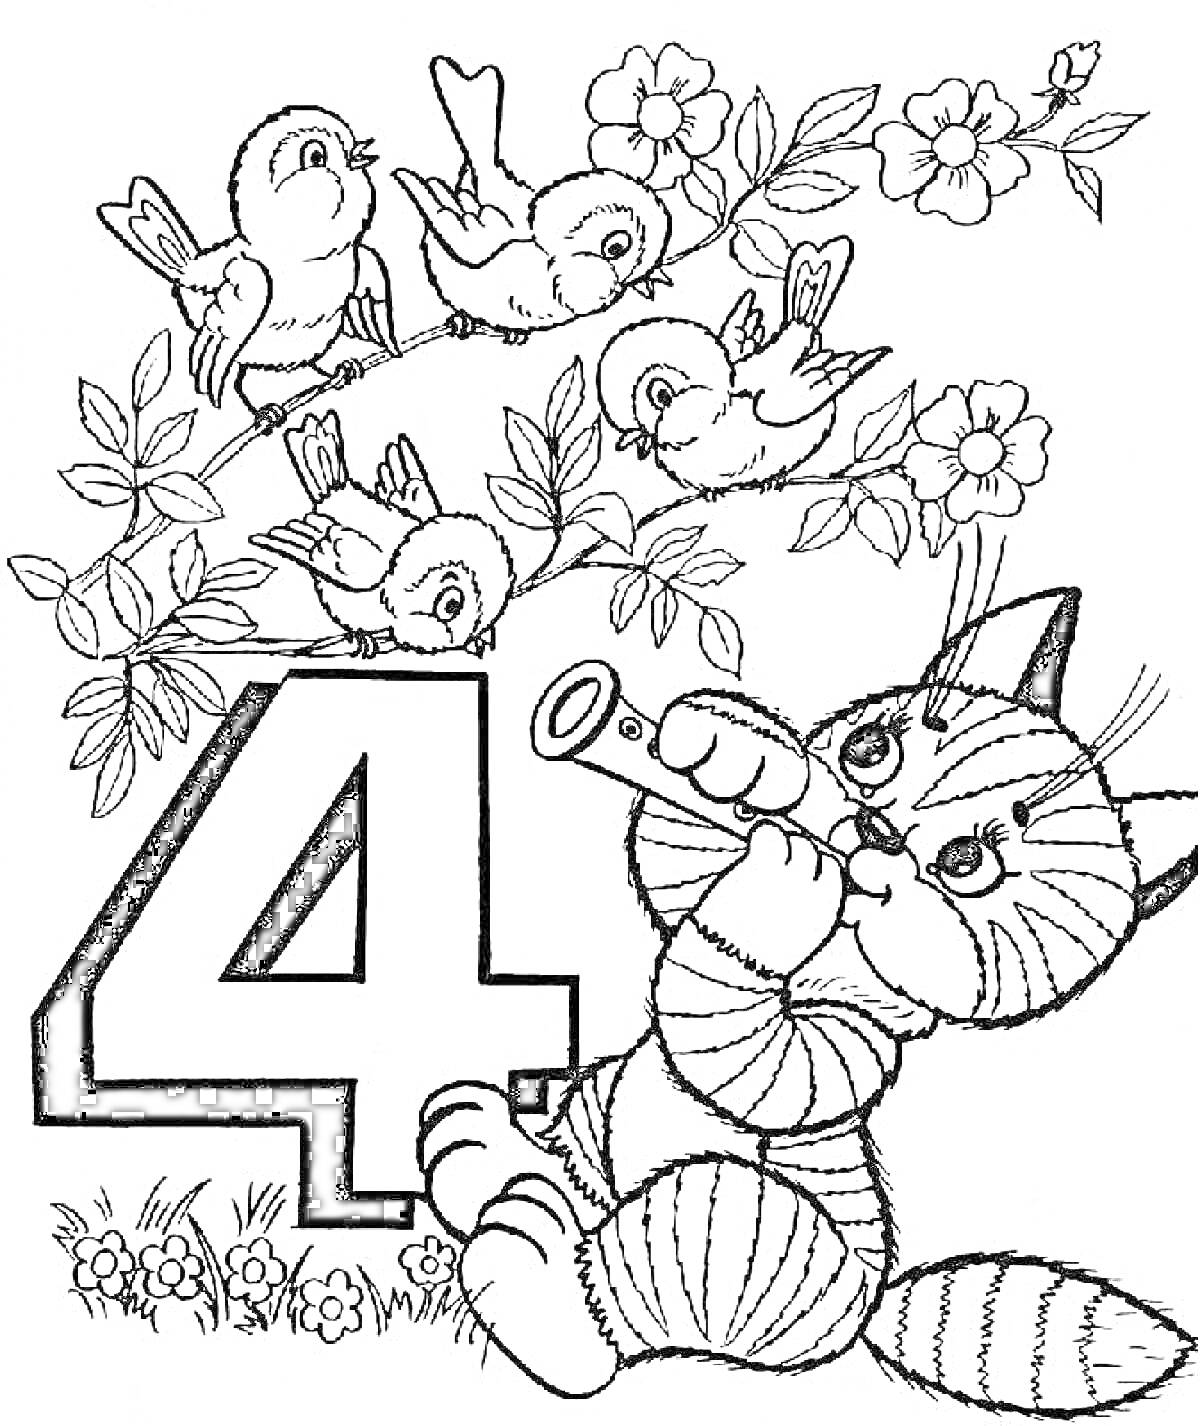 Цифра 4, кот с трубой, сидящий на траве, птицы на ветке с цветами